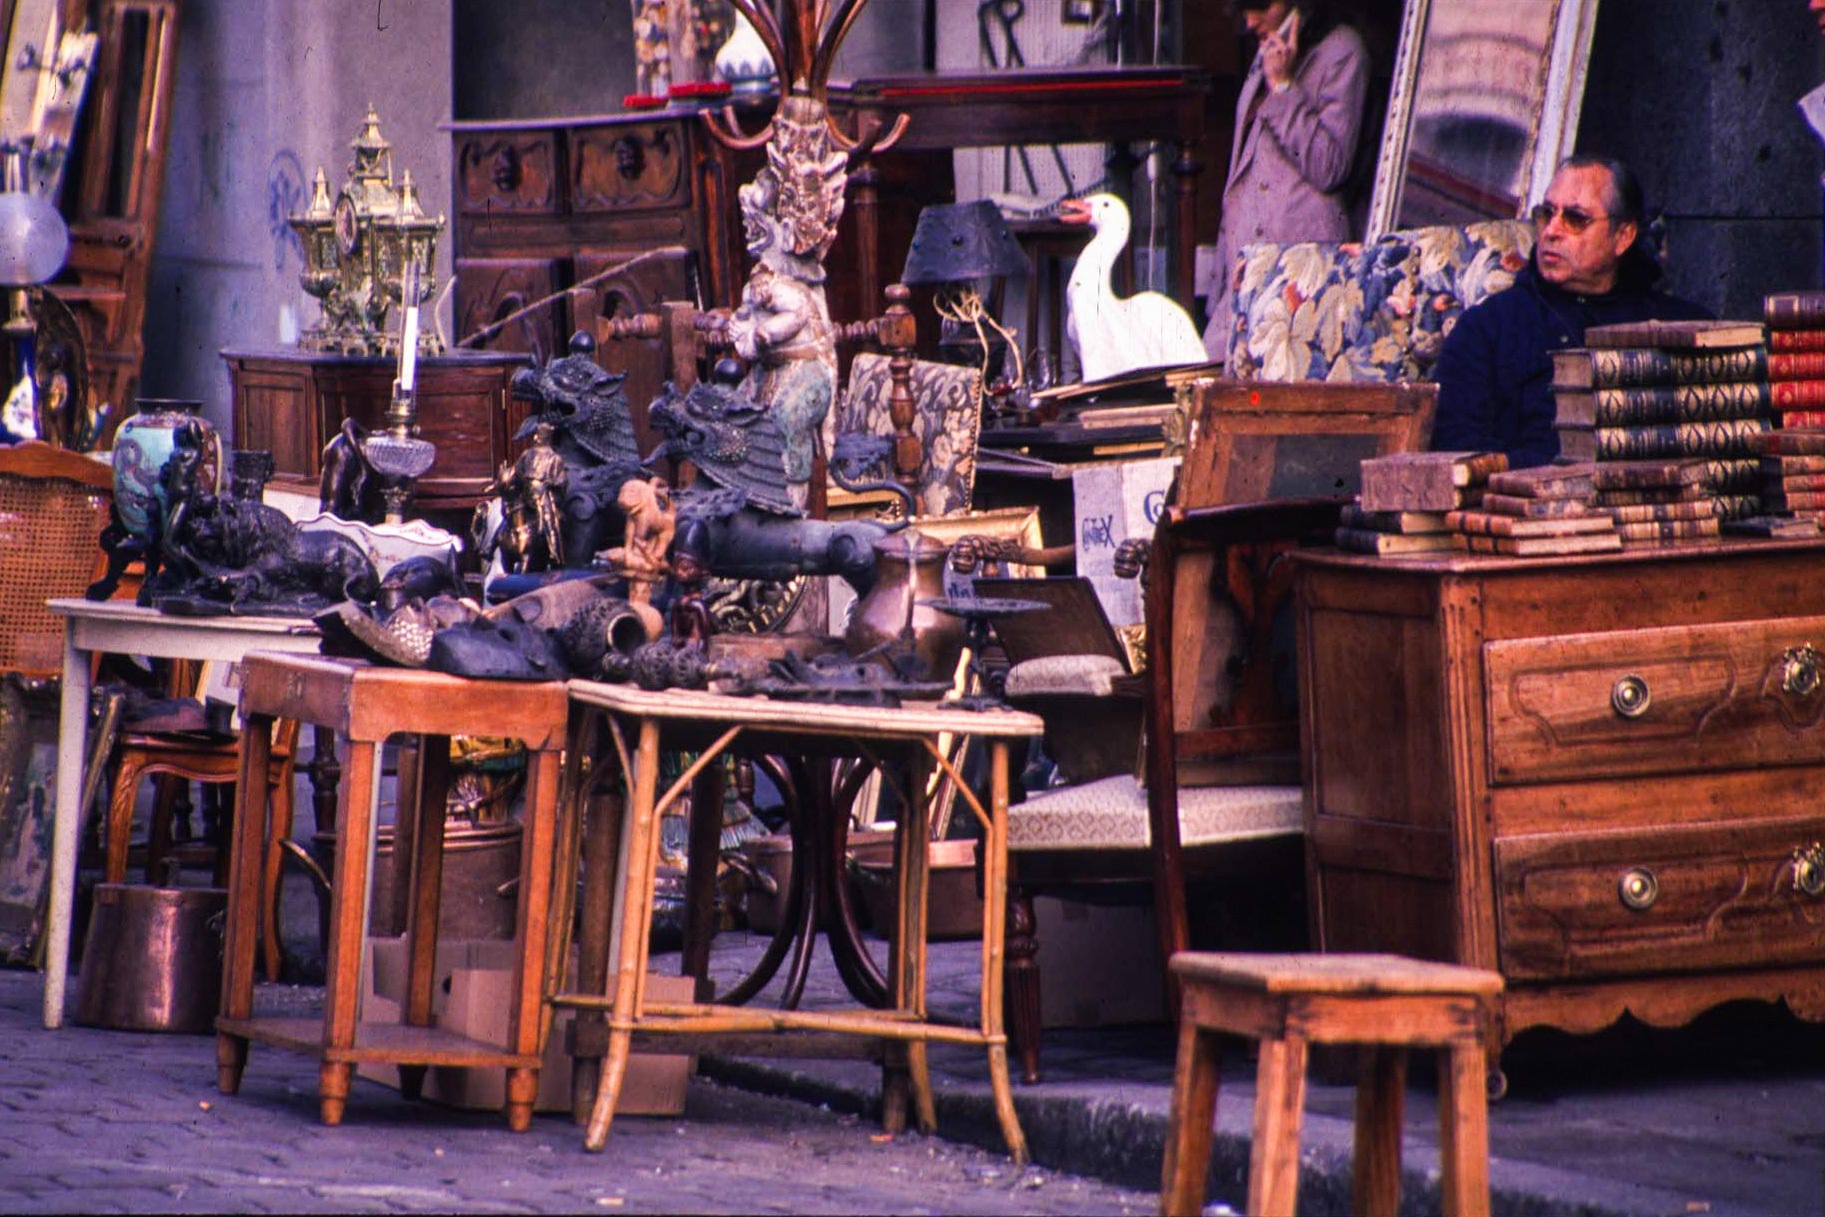 Paris – Der Flohmarkt Porte de Clignancourt bietet ein reichhaltiges Angebot alter, mitunter etwas verschlissener Möbel.